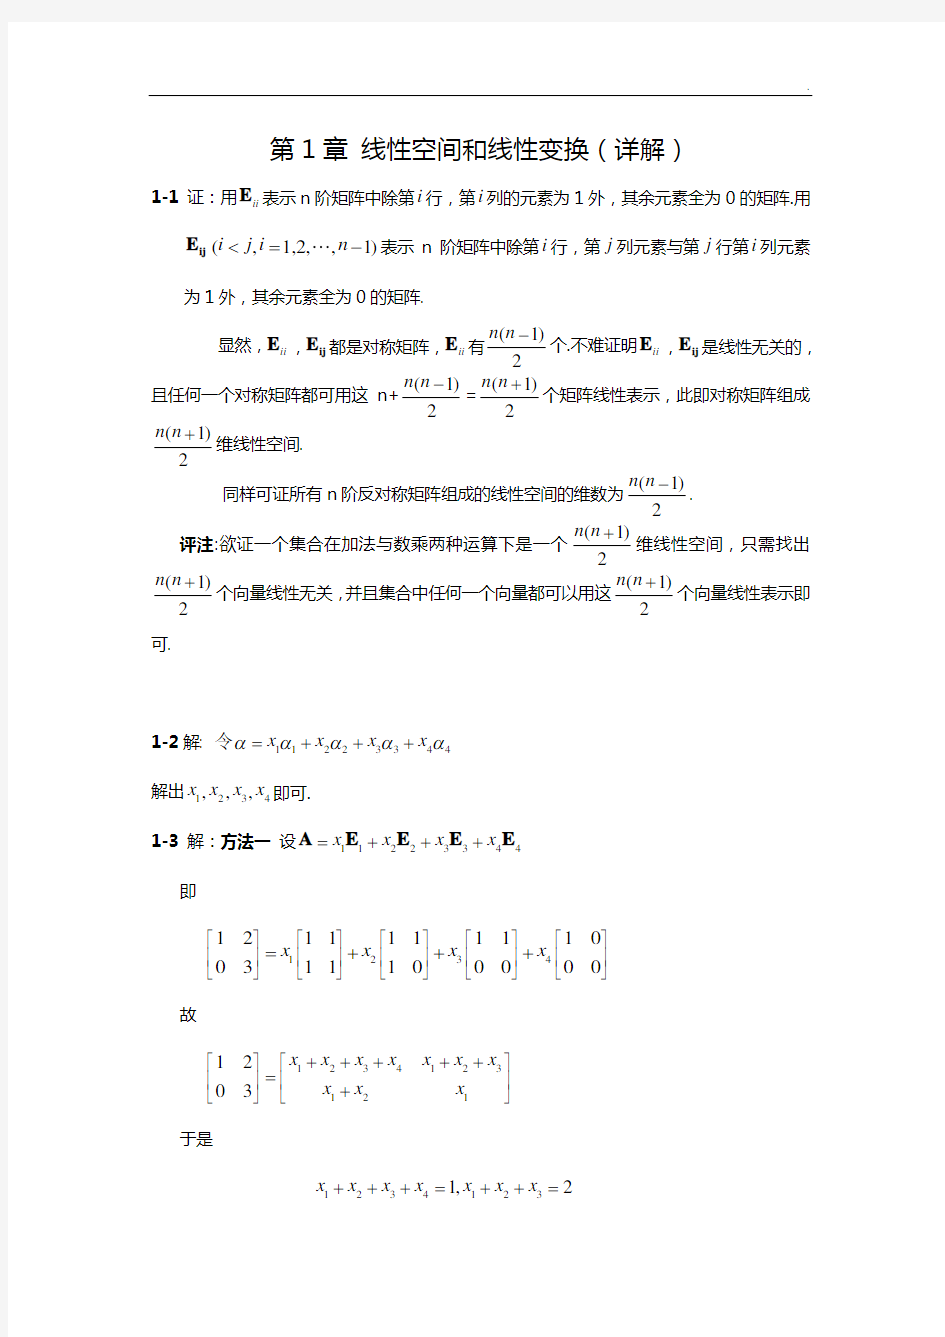 《矩阵分析》(第3版)史荣昌,魏丰.第一章课后知识题目解析